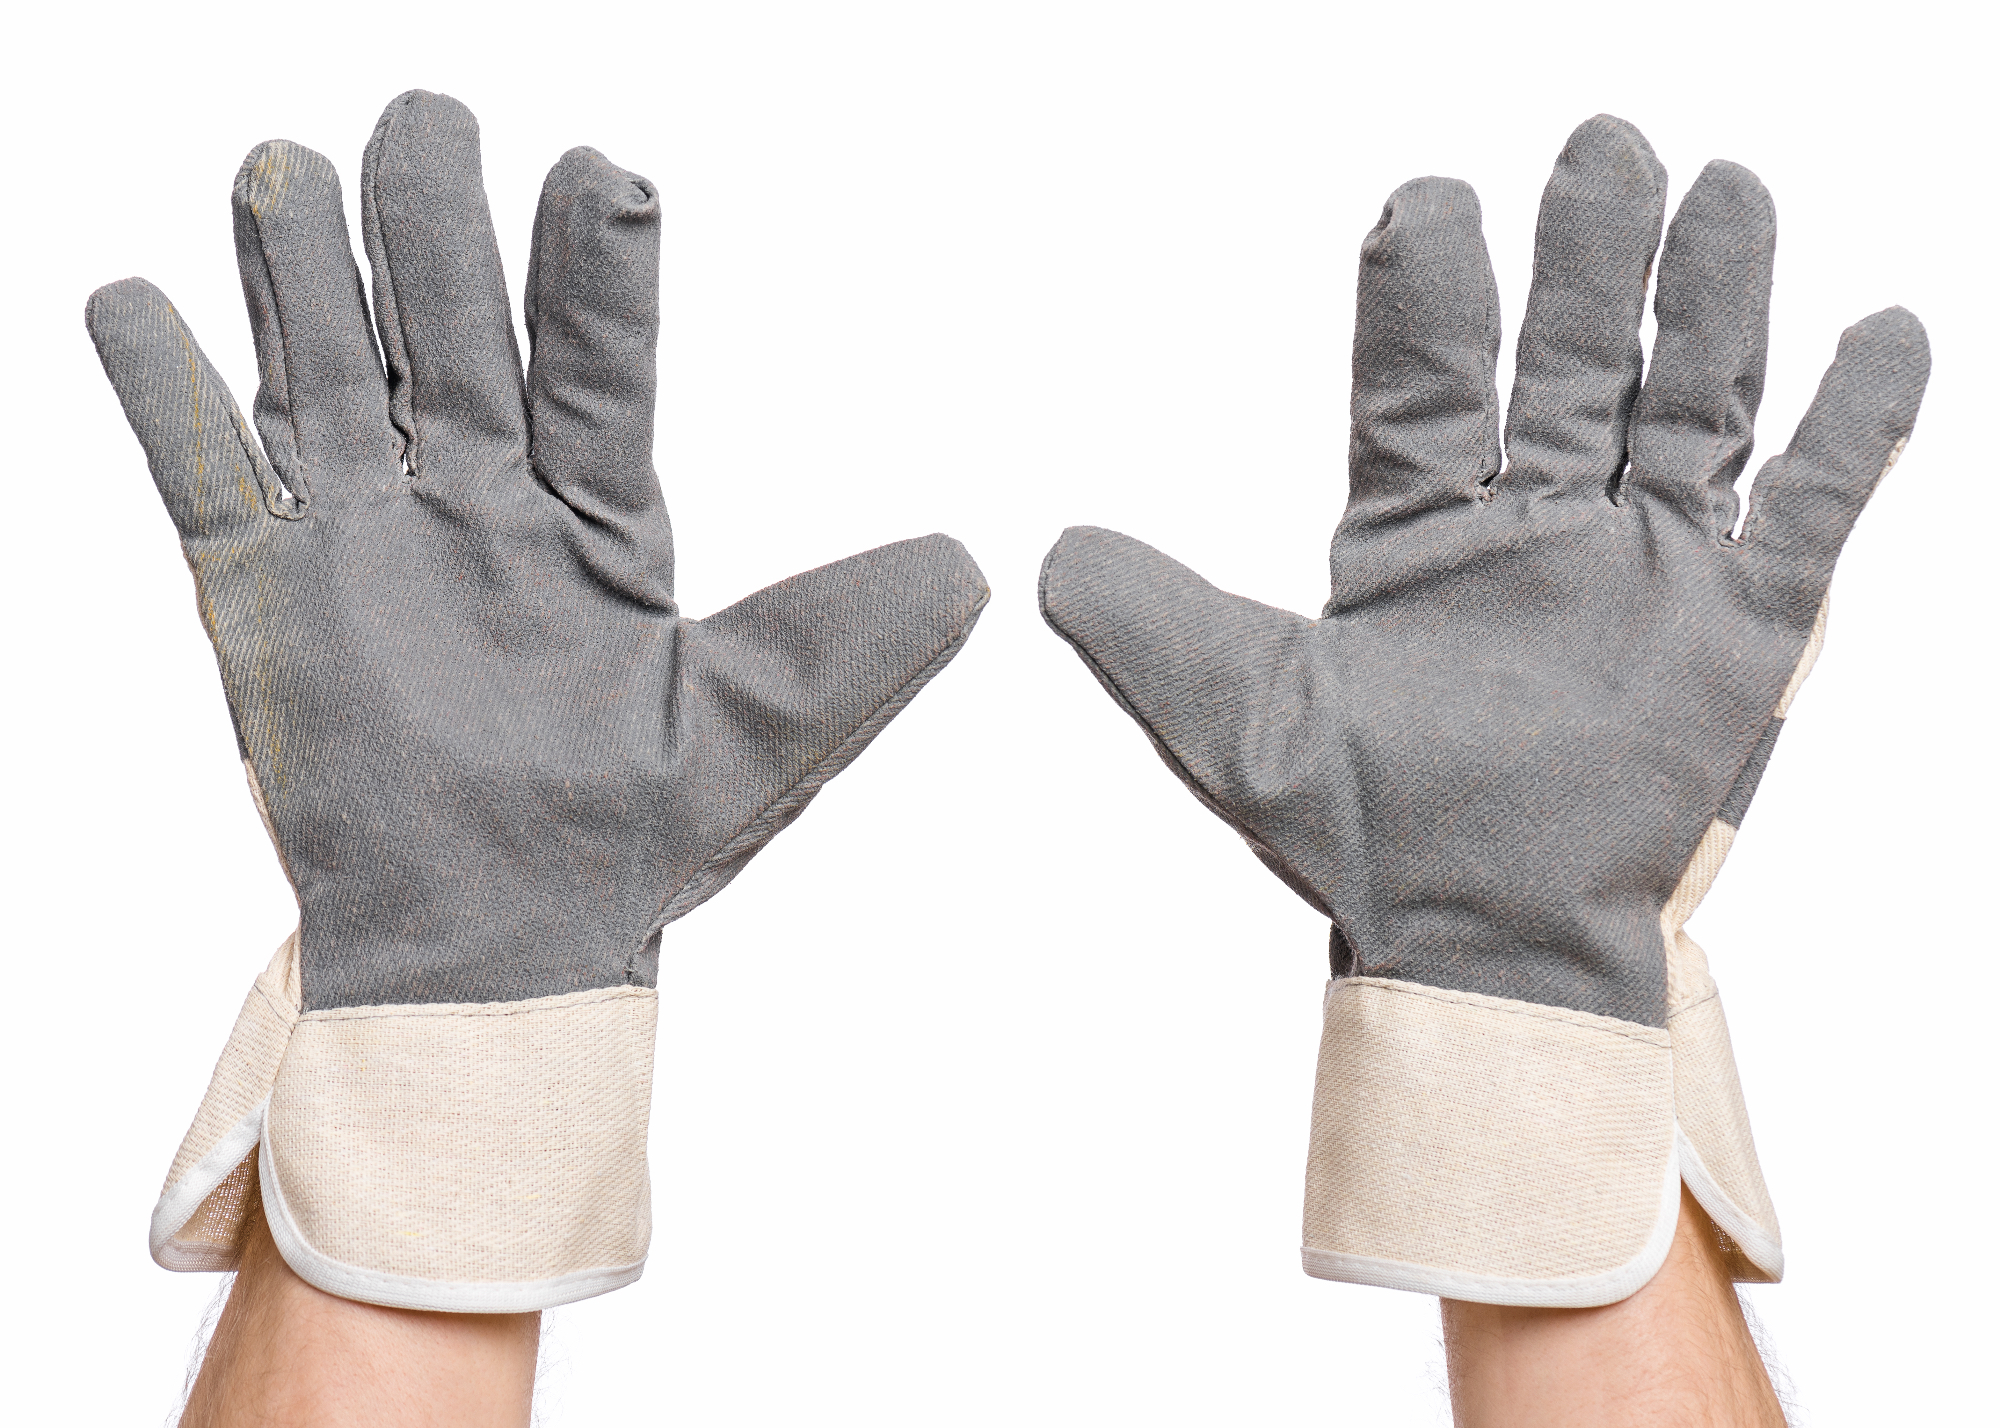 Delovne rokavice ne zaščitijo samo vaših rok